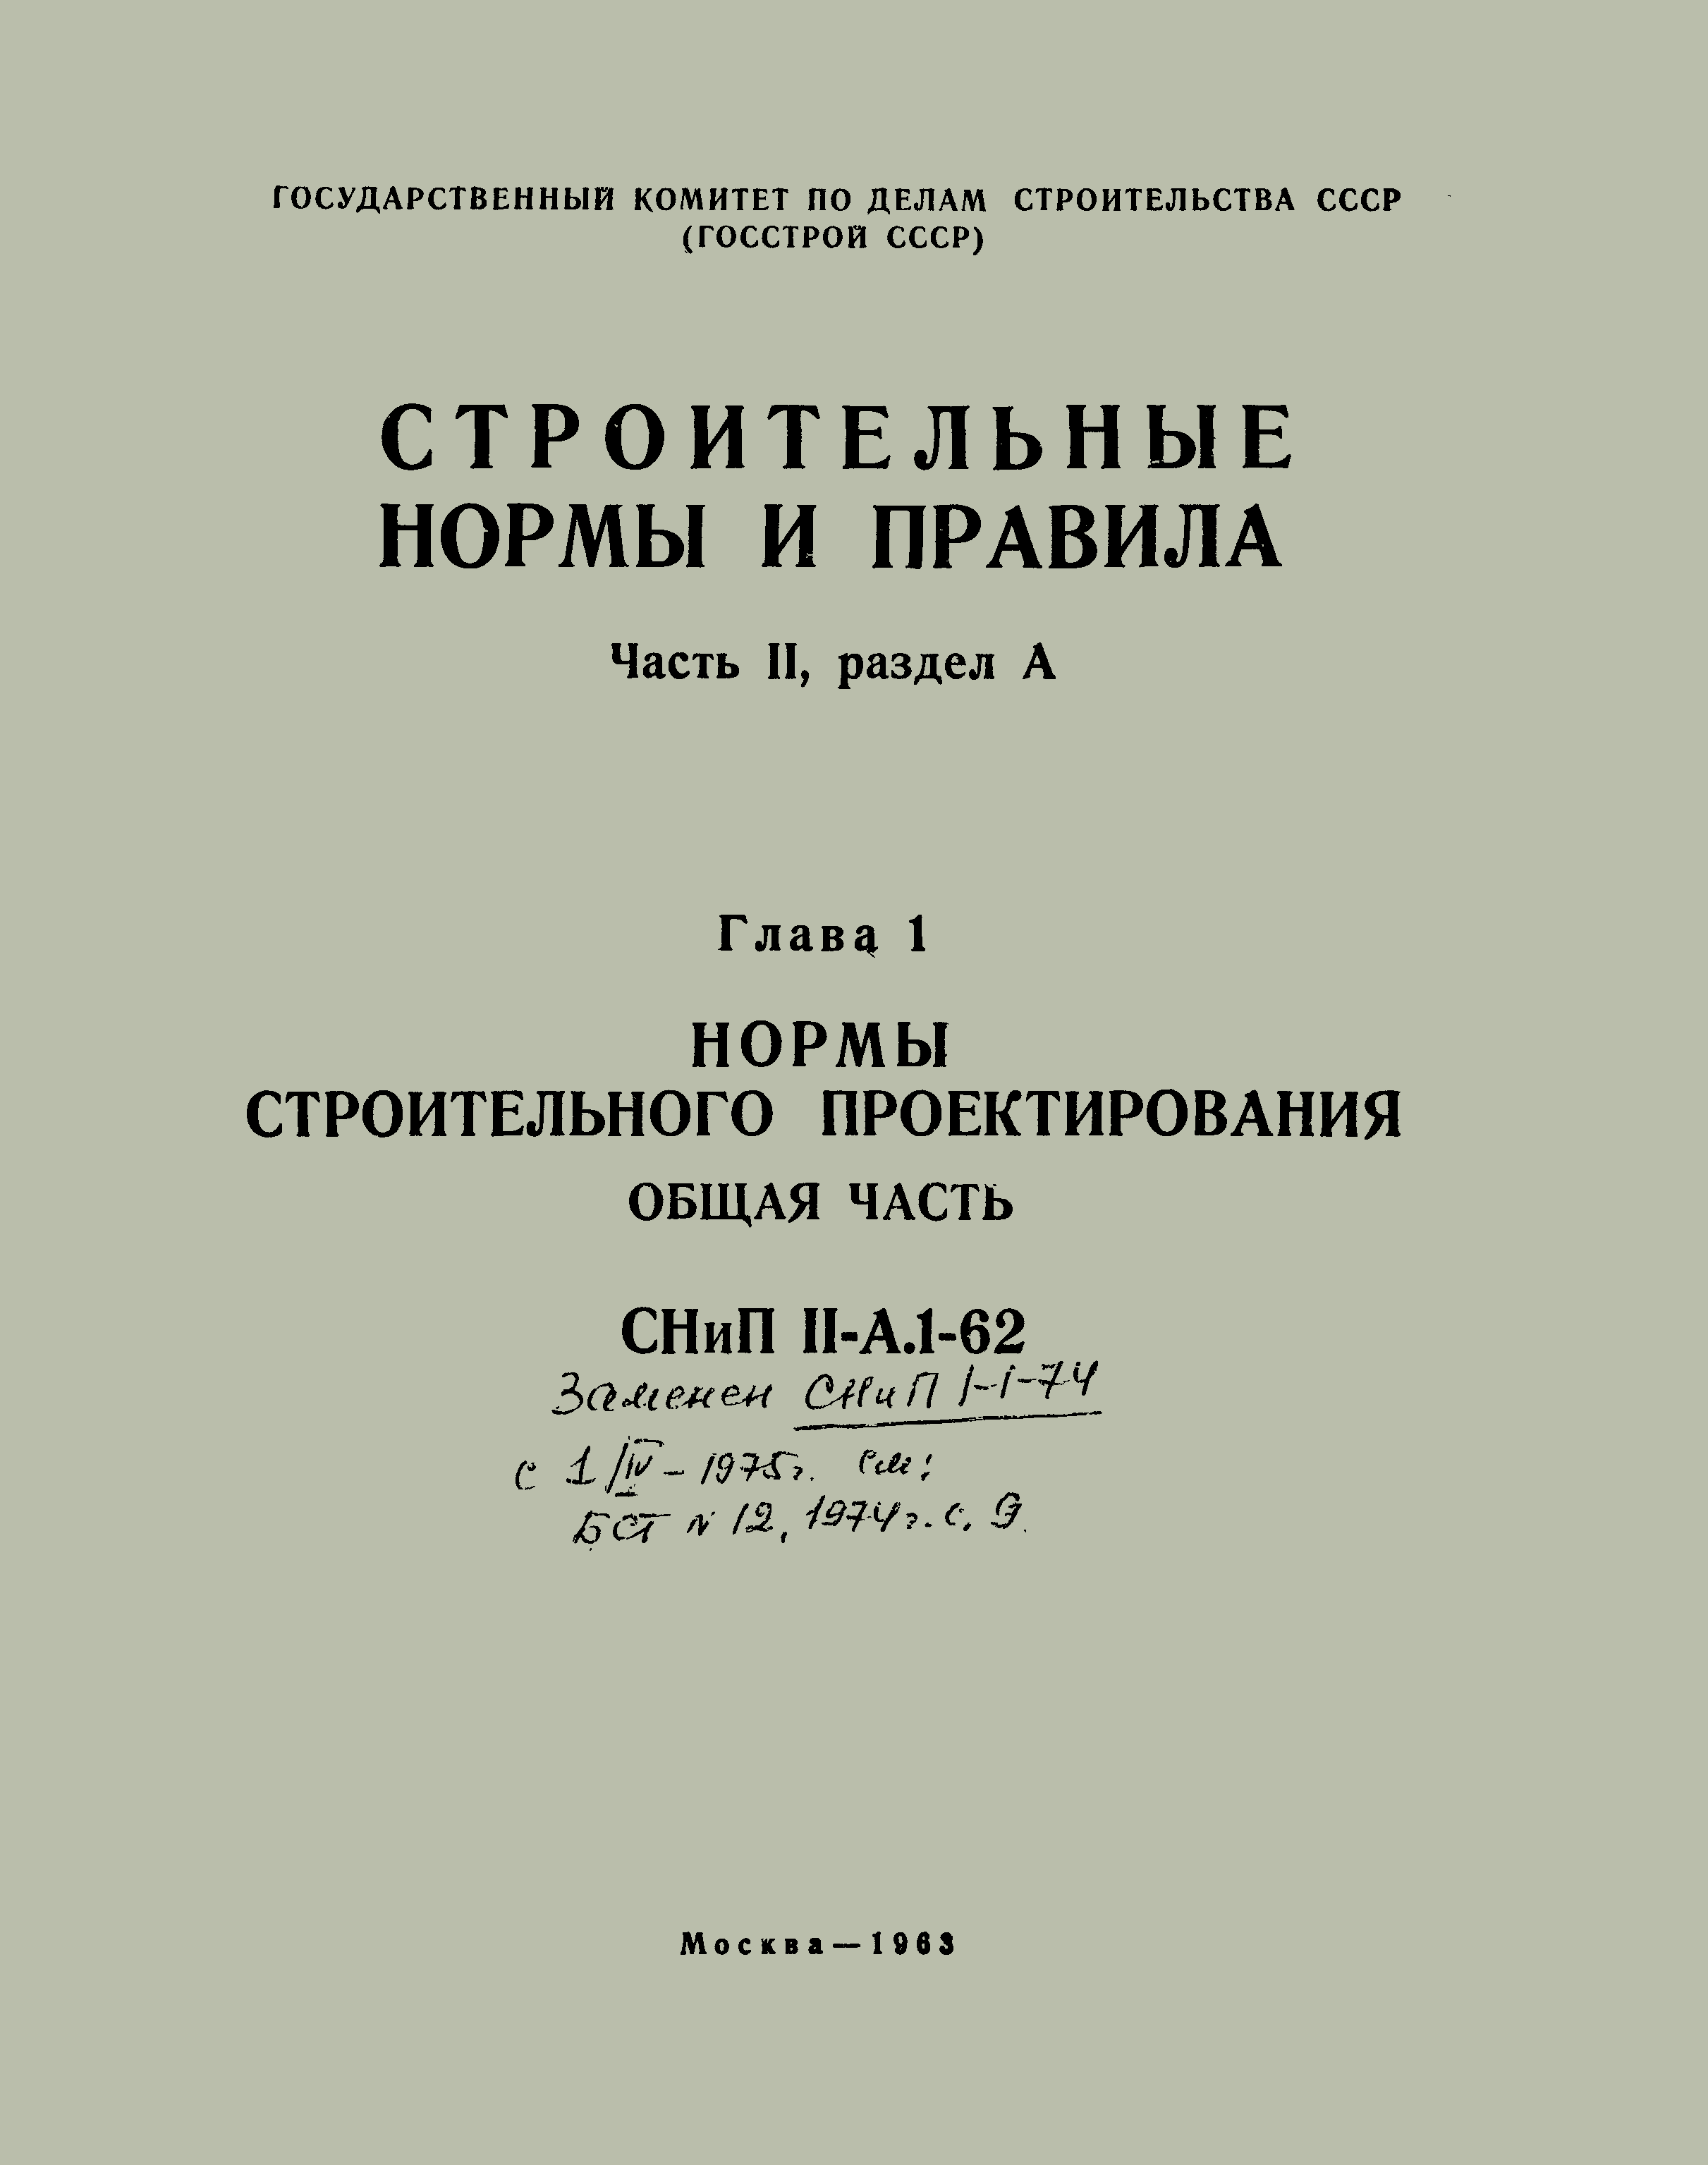 СНиП II-А.1-62